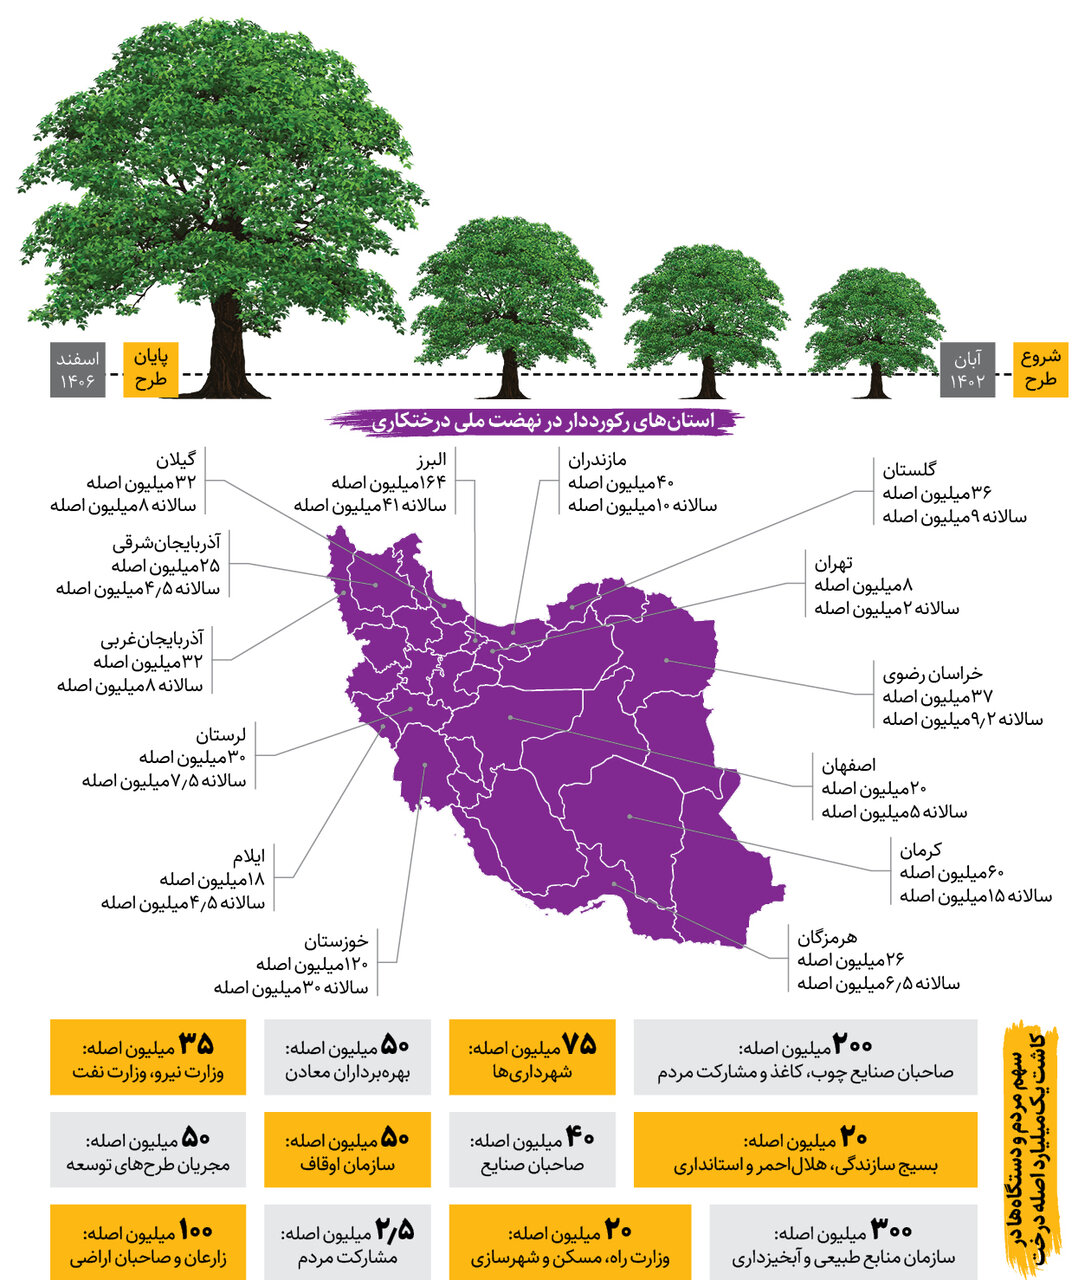 اینفوگرافیک | جزئیات جدید از کاشت یک میلیارد درخت در کشور | سهم هر استان چقدر است؟  | دو استان رکورددار با کاشت ۲۸۰ میلیون نهال